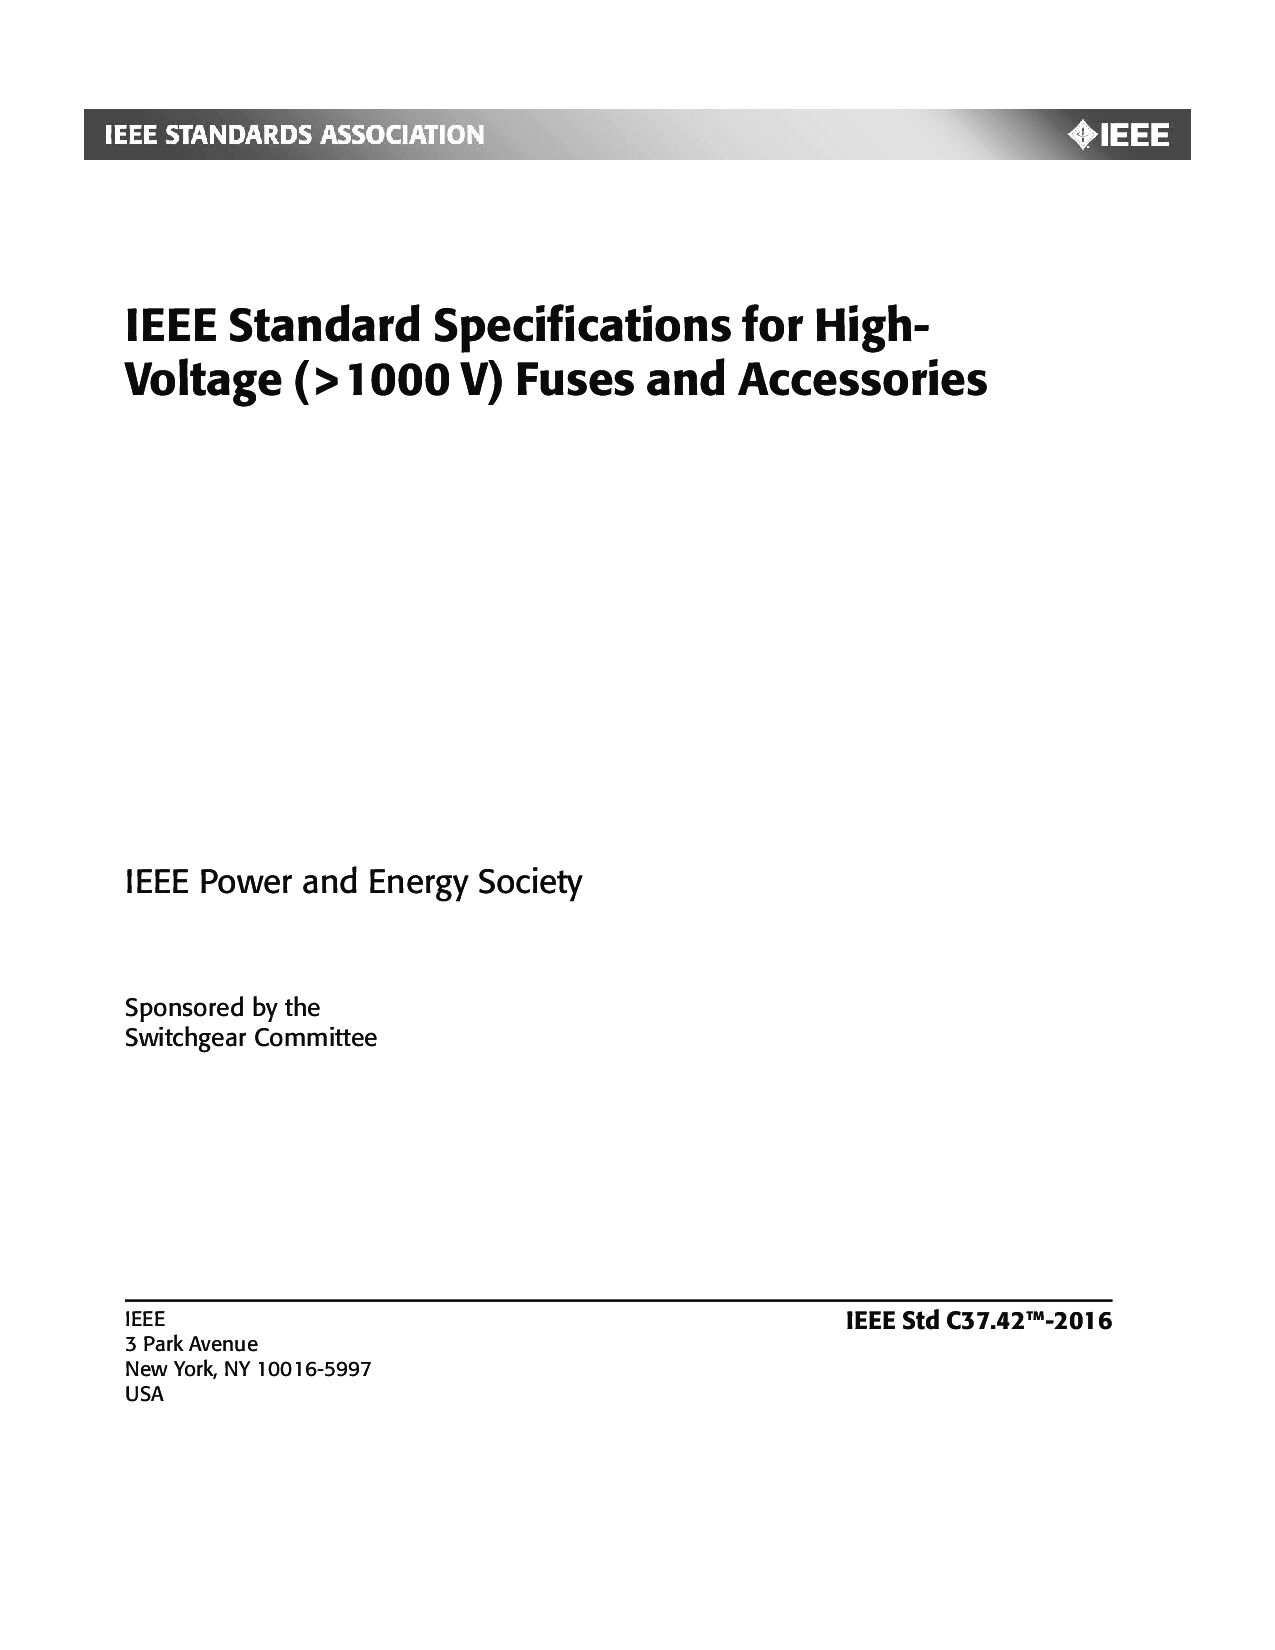 IEEE Std C37.42-2016